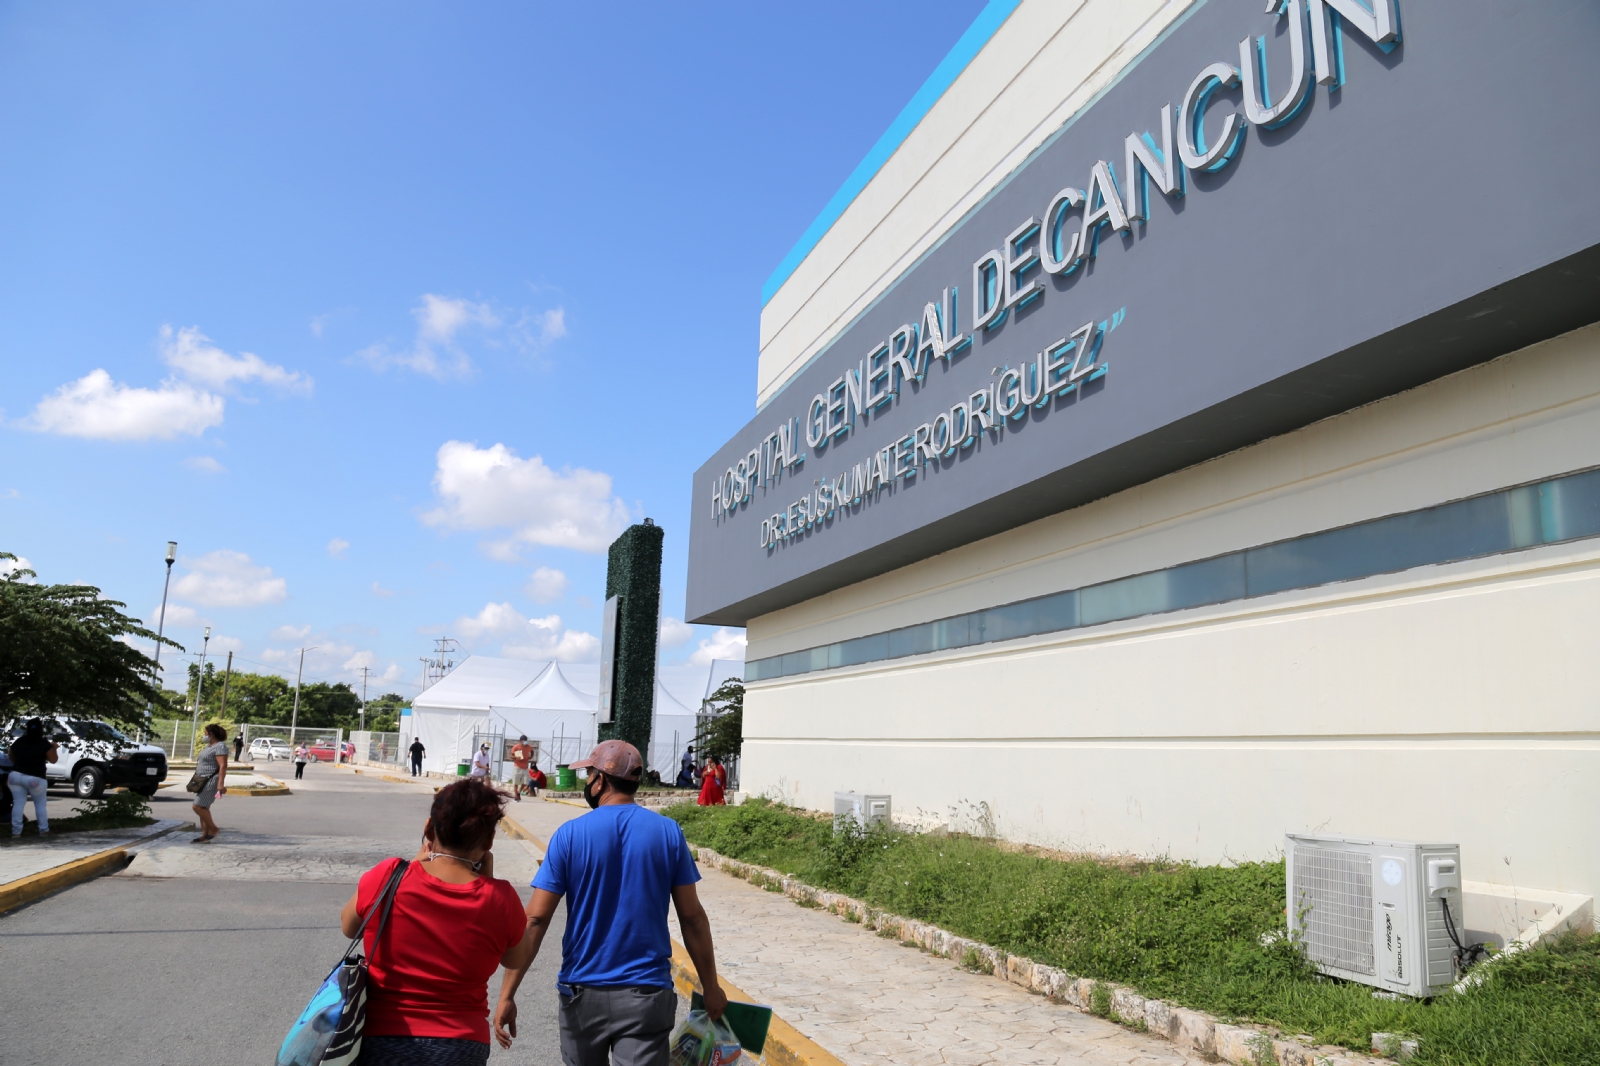 La menor permanece estable y bajo vigilancia médica en el hospital de Cancún